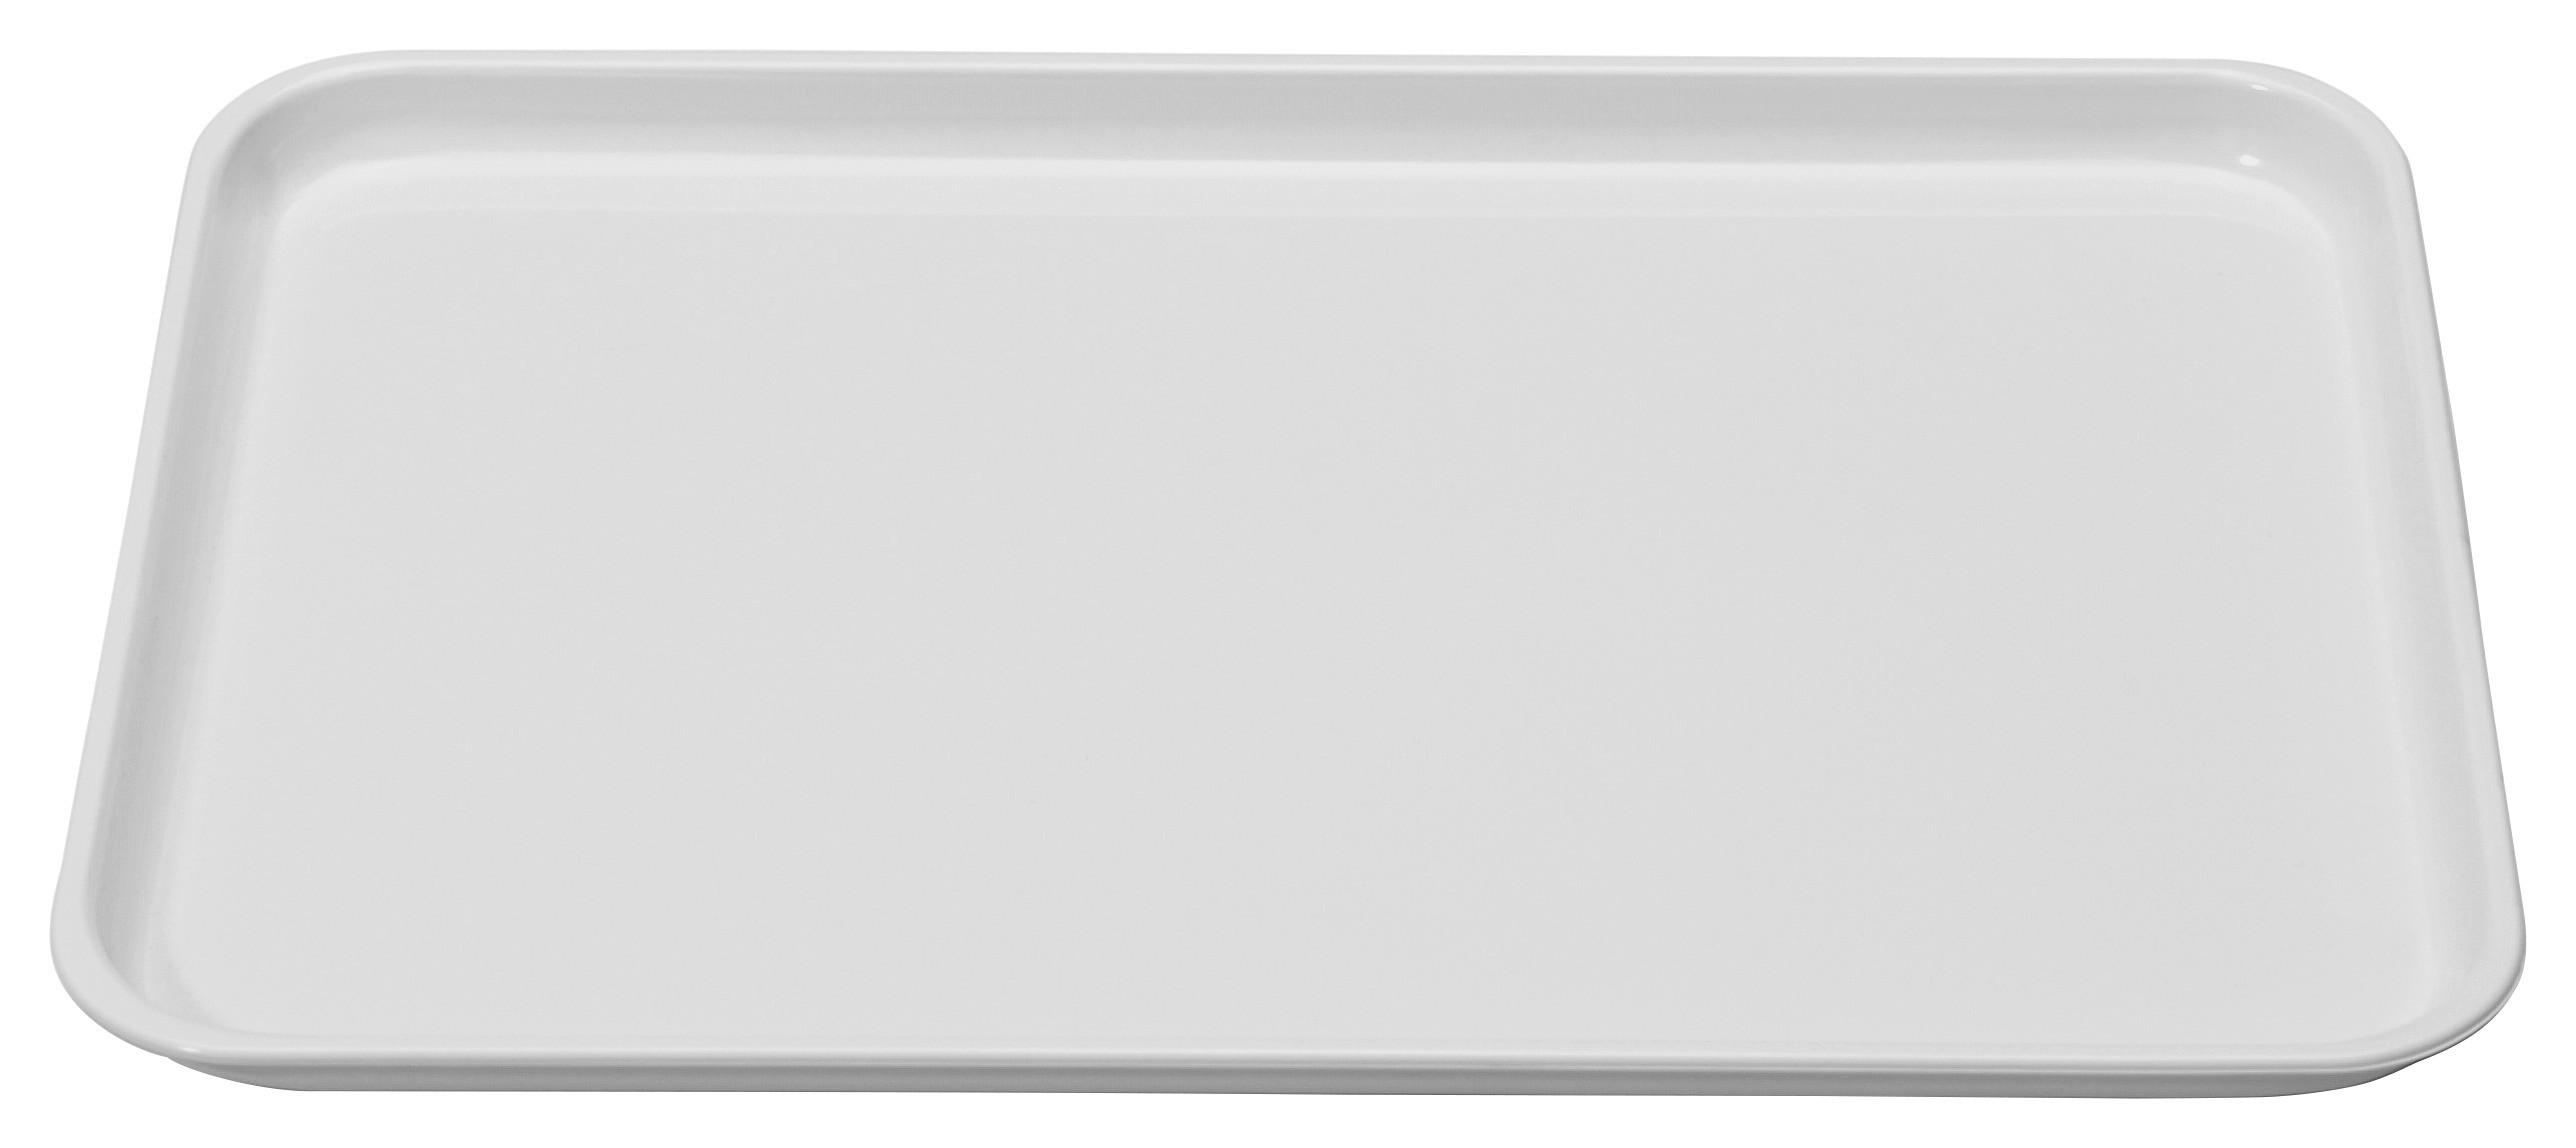 Tablett aus Kunststoff Britta 32x23 cm, Weiß - Weiß, KONVENTIONELL, Kunststoff (32/23/2cm)